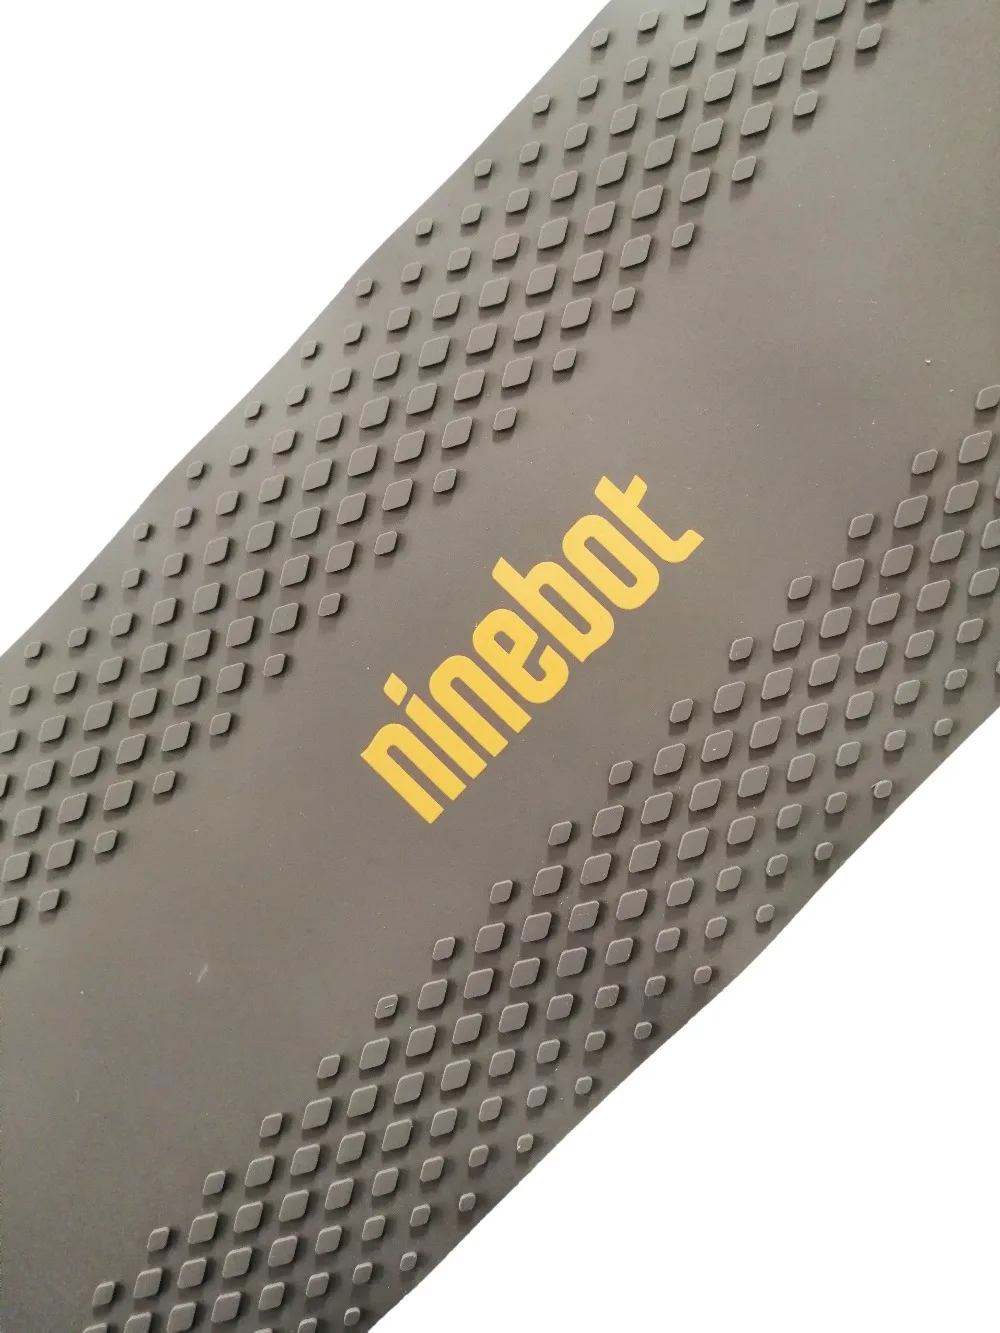 Электрический скутер коврик для ног NINEBOT MAX G30 kickscooter коврик для ног наклейка скейтборд клейкая педаль накладка запчасти